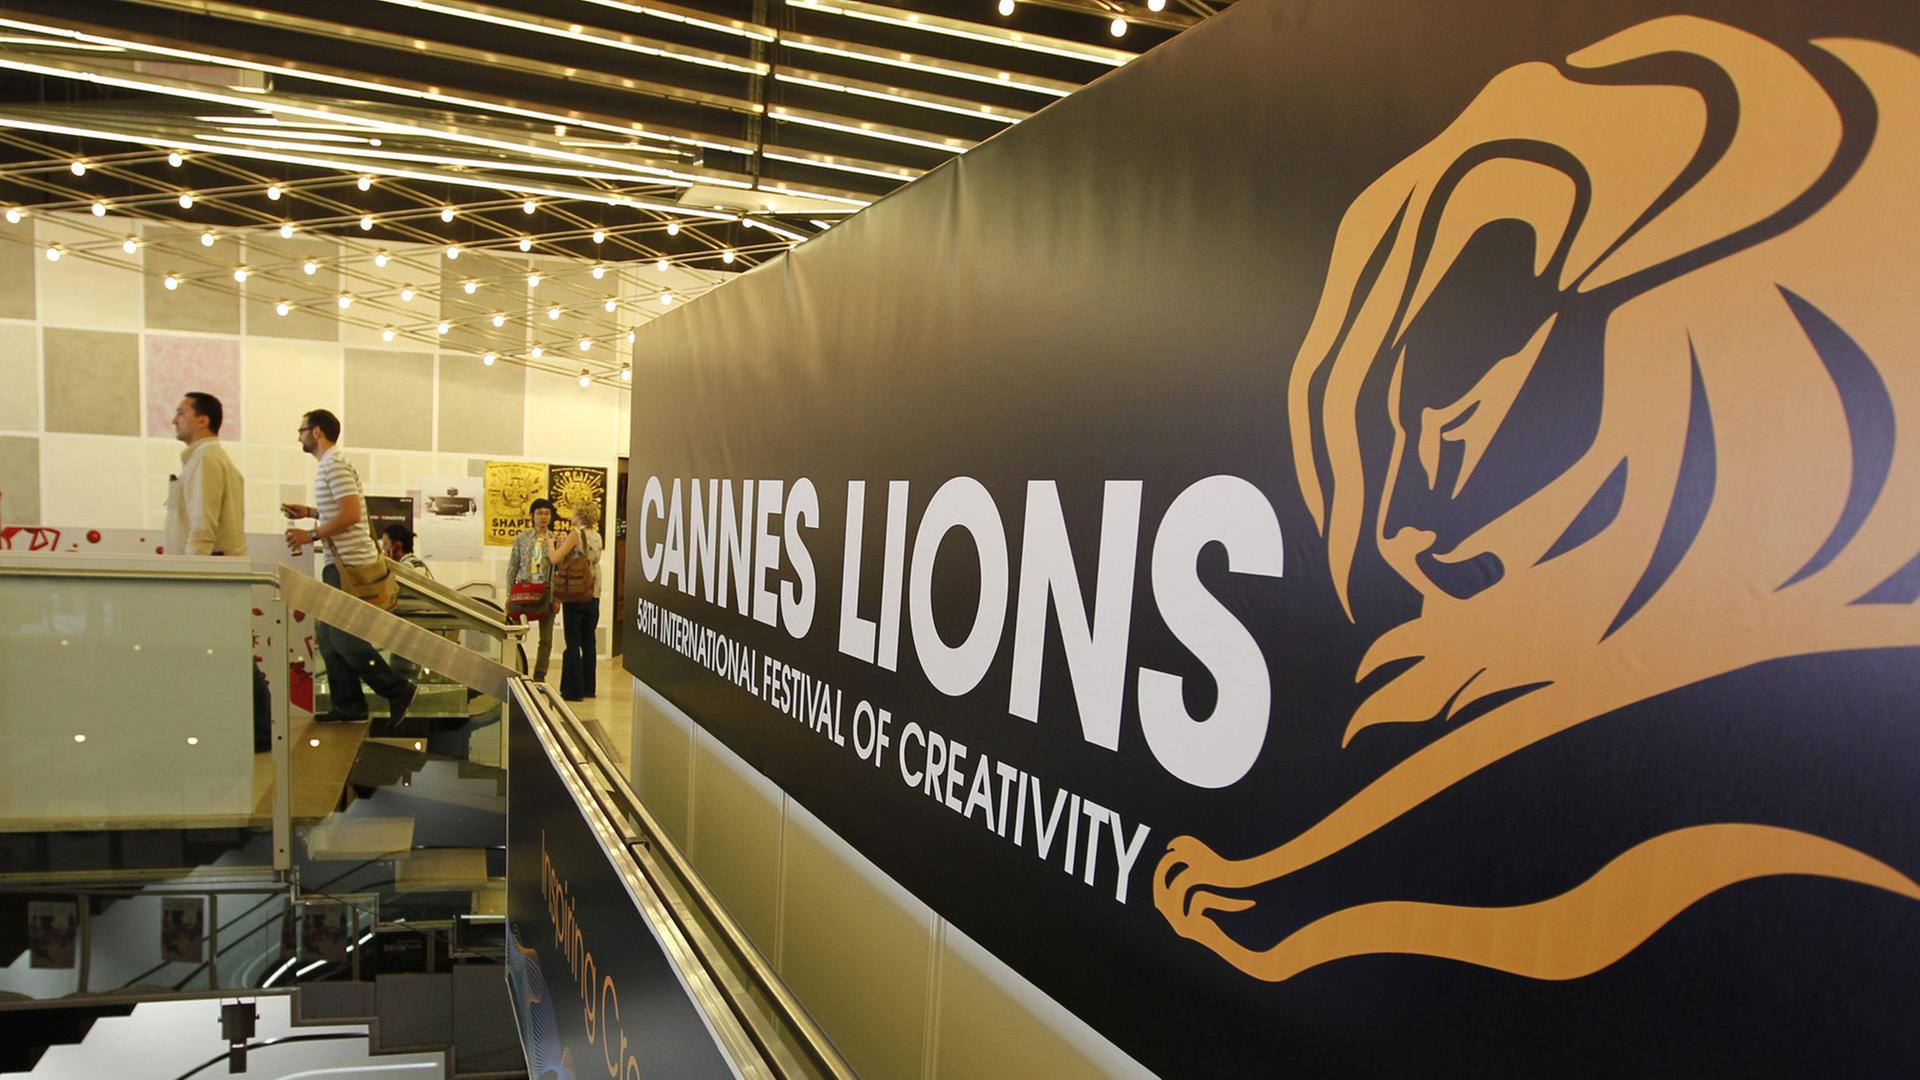 Cannes Lions - Festival of Creativity: Hier vergibt die internationale Werbebranche alljährlich die begehrten Löwen-Trophäen. Aufnahme vom 22.6.2011